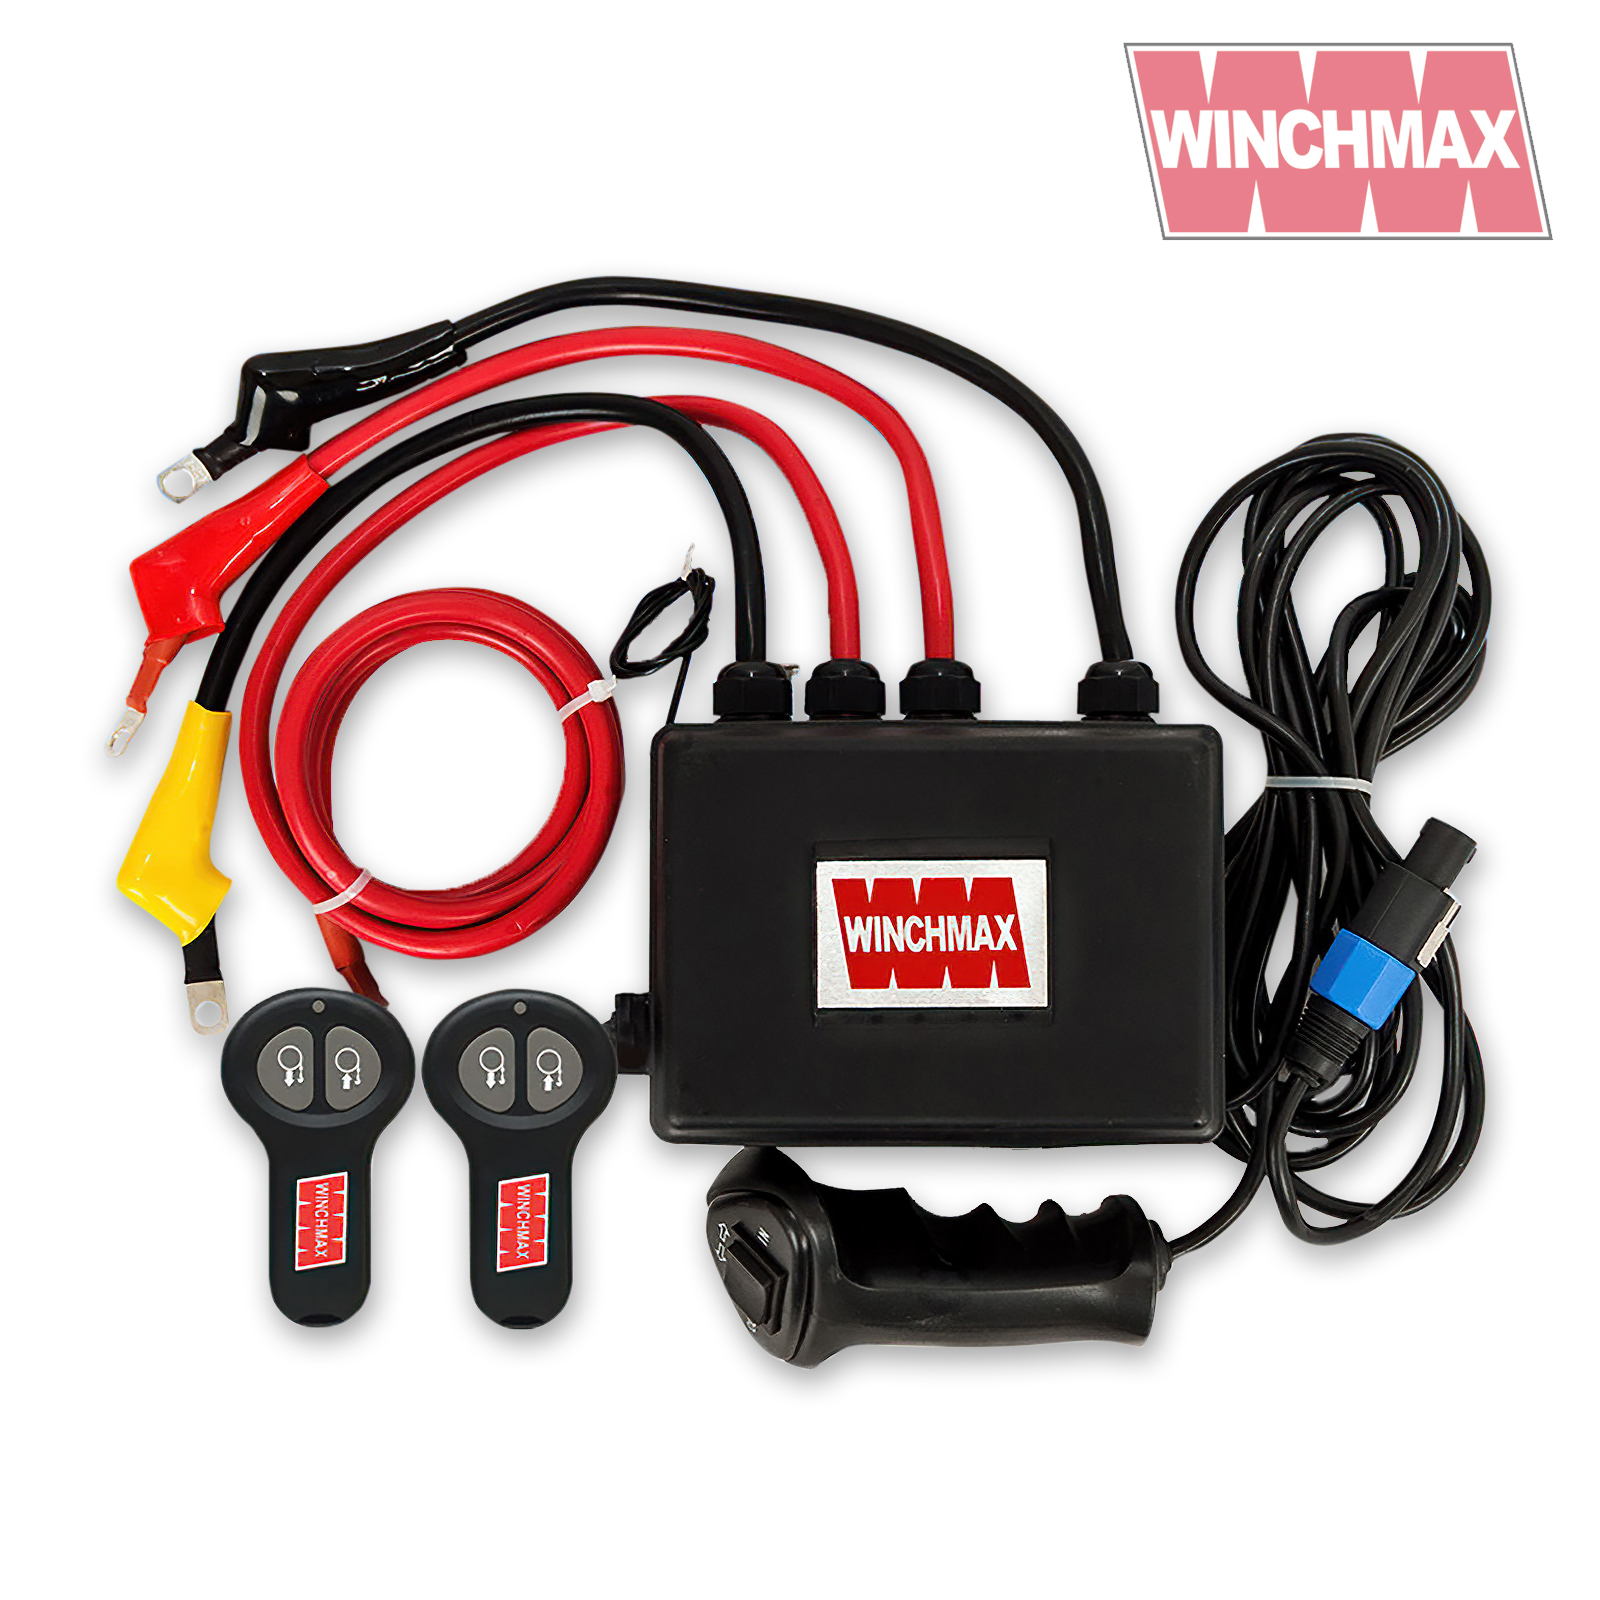 WINCHMAX Complete 12V Electric Winch Control Box